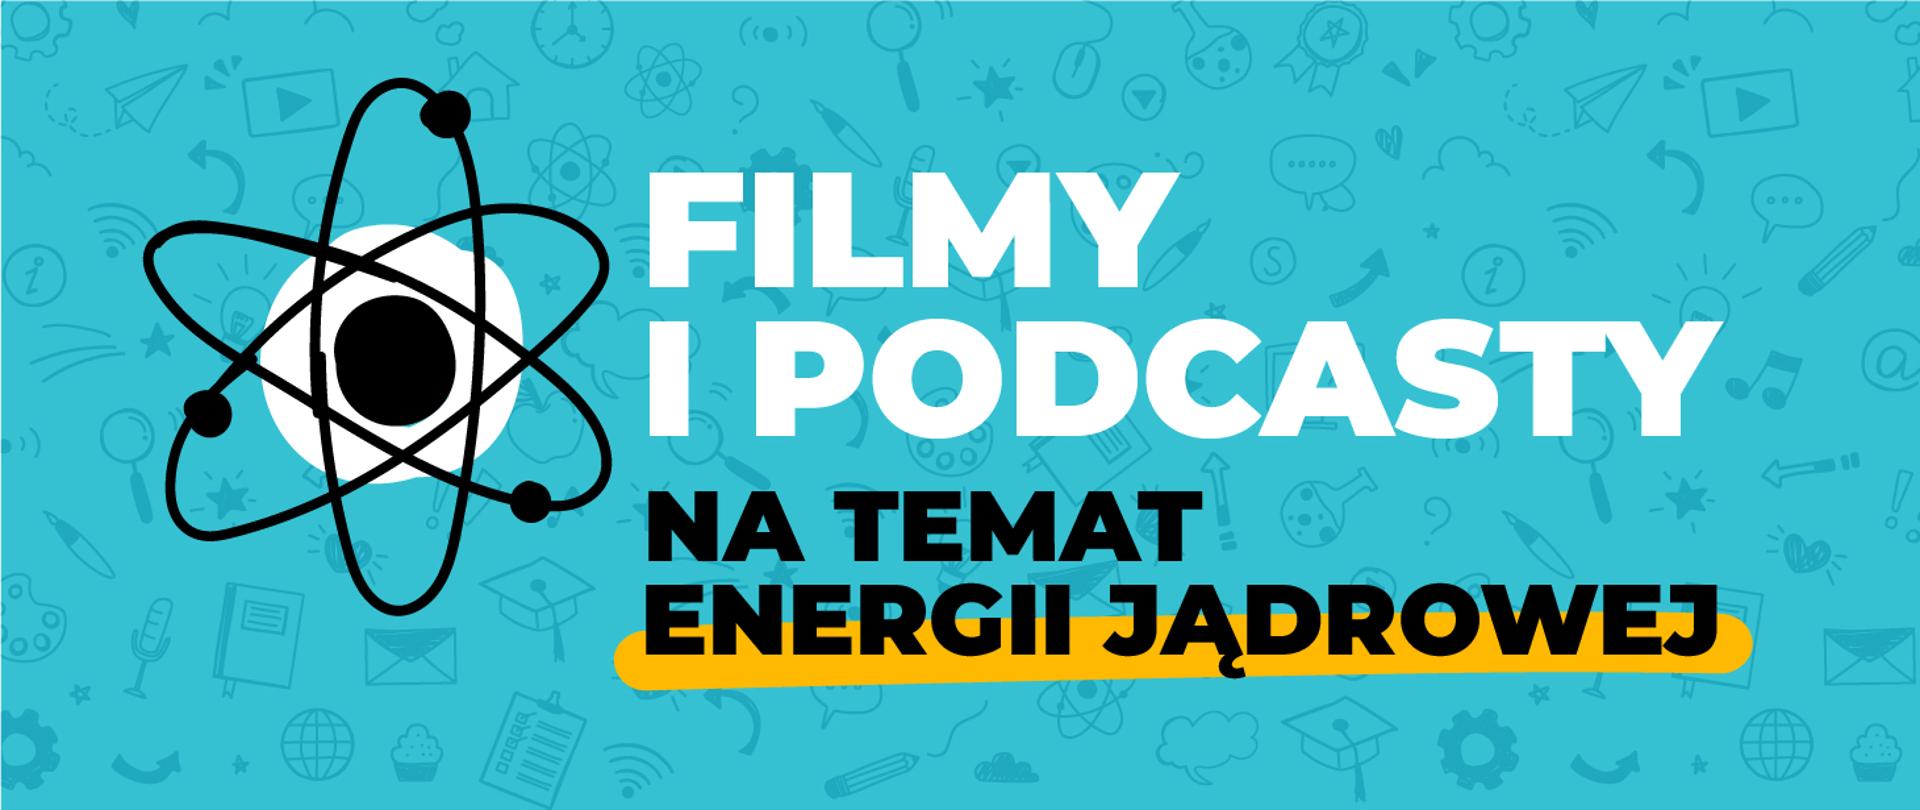 Filmy i podcasty na temat energii jądrowej